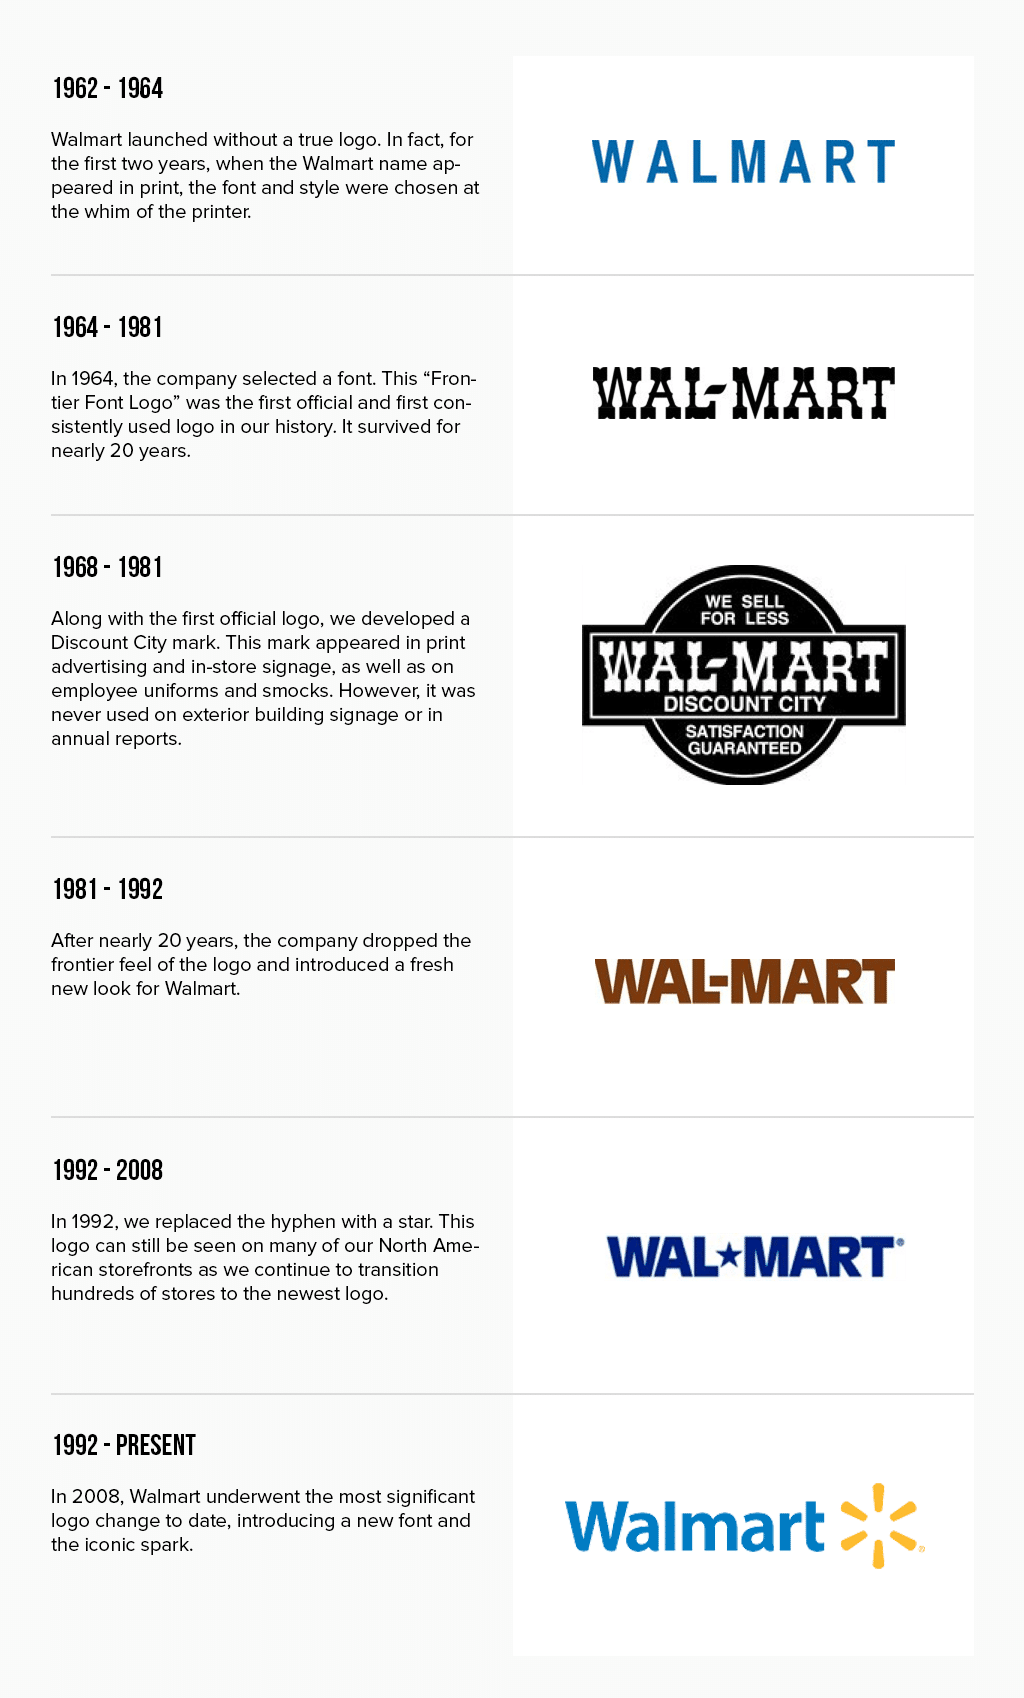 Evolución del logo de Walmart